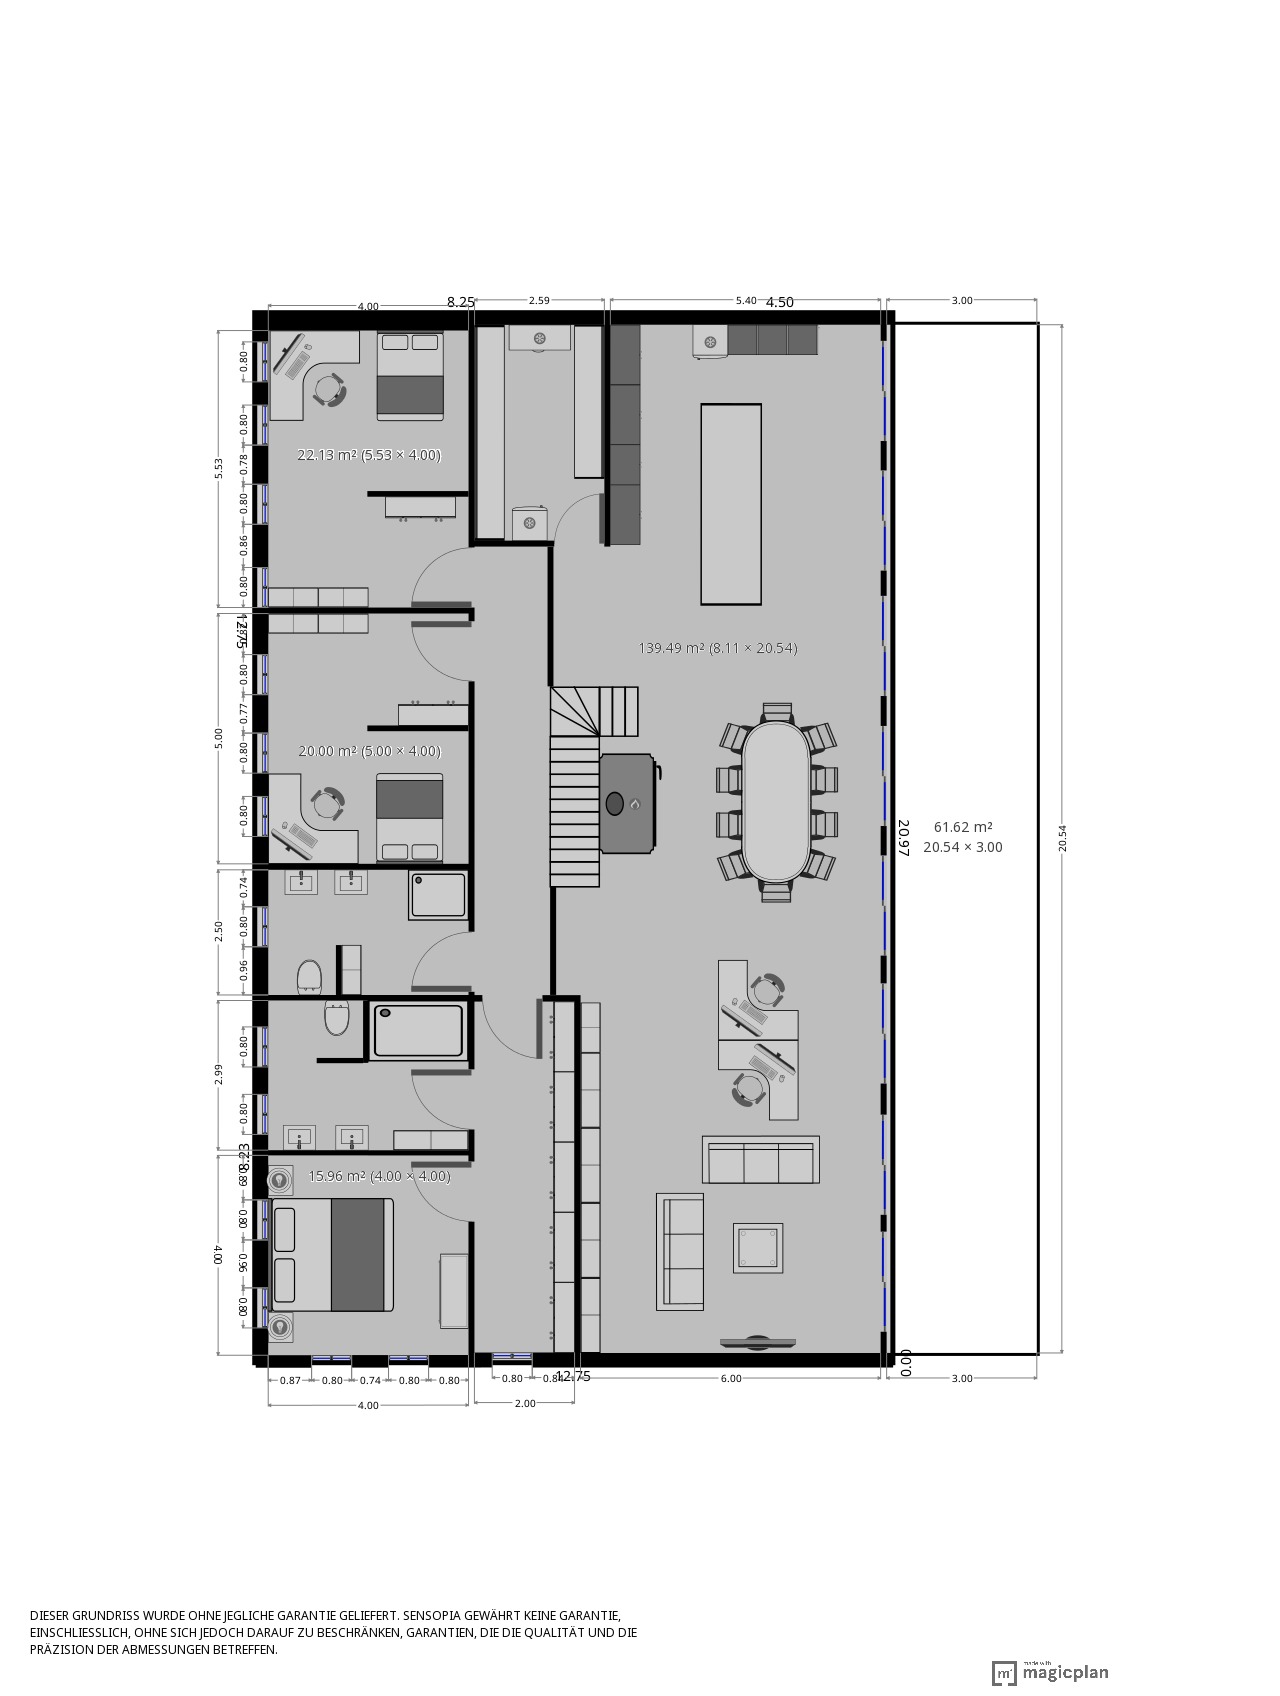 blockhaus-mit-krueppelwalmdach-am-wald-planung-verbessern-265303-2.JPG